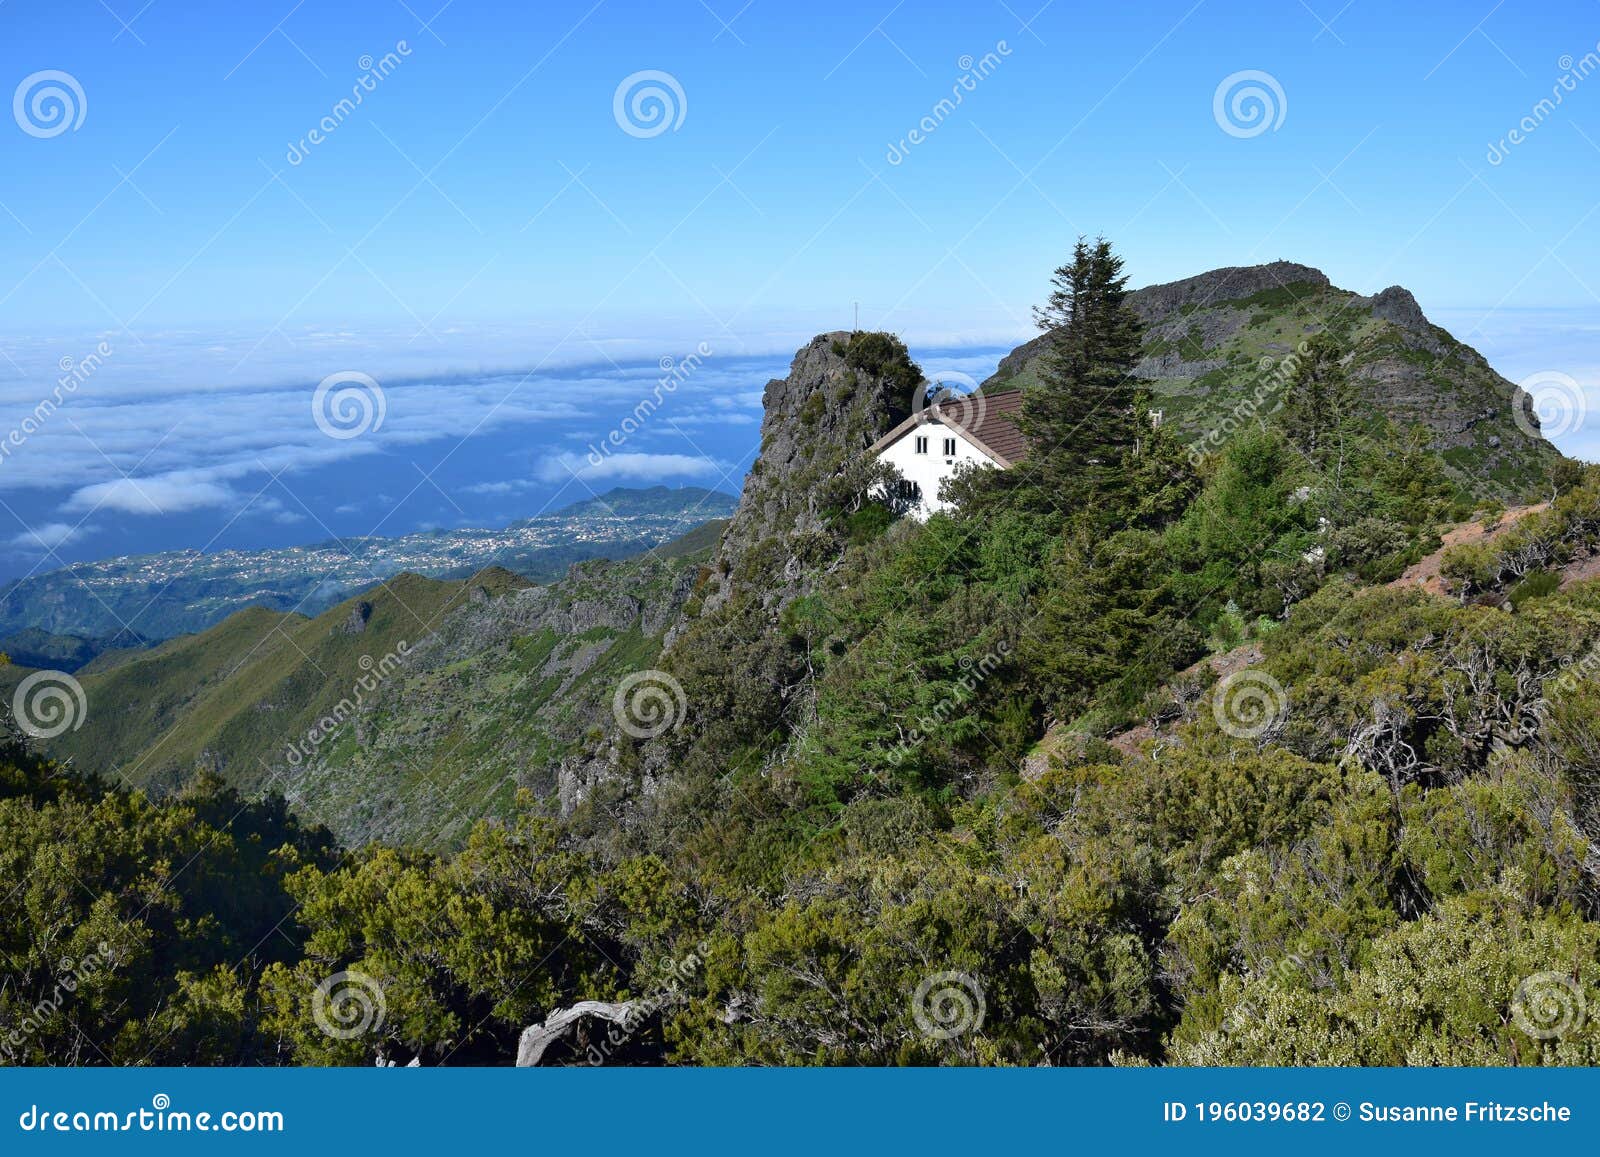 madeiran landscape with high mountains and casa de abrigo. portugal